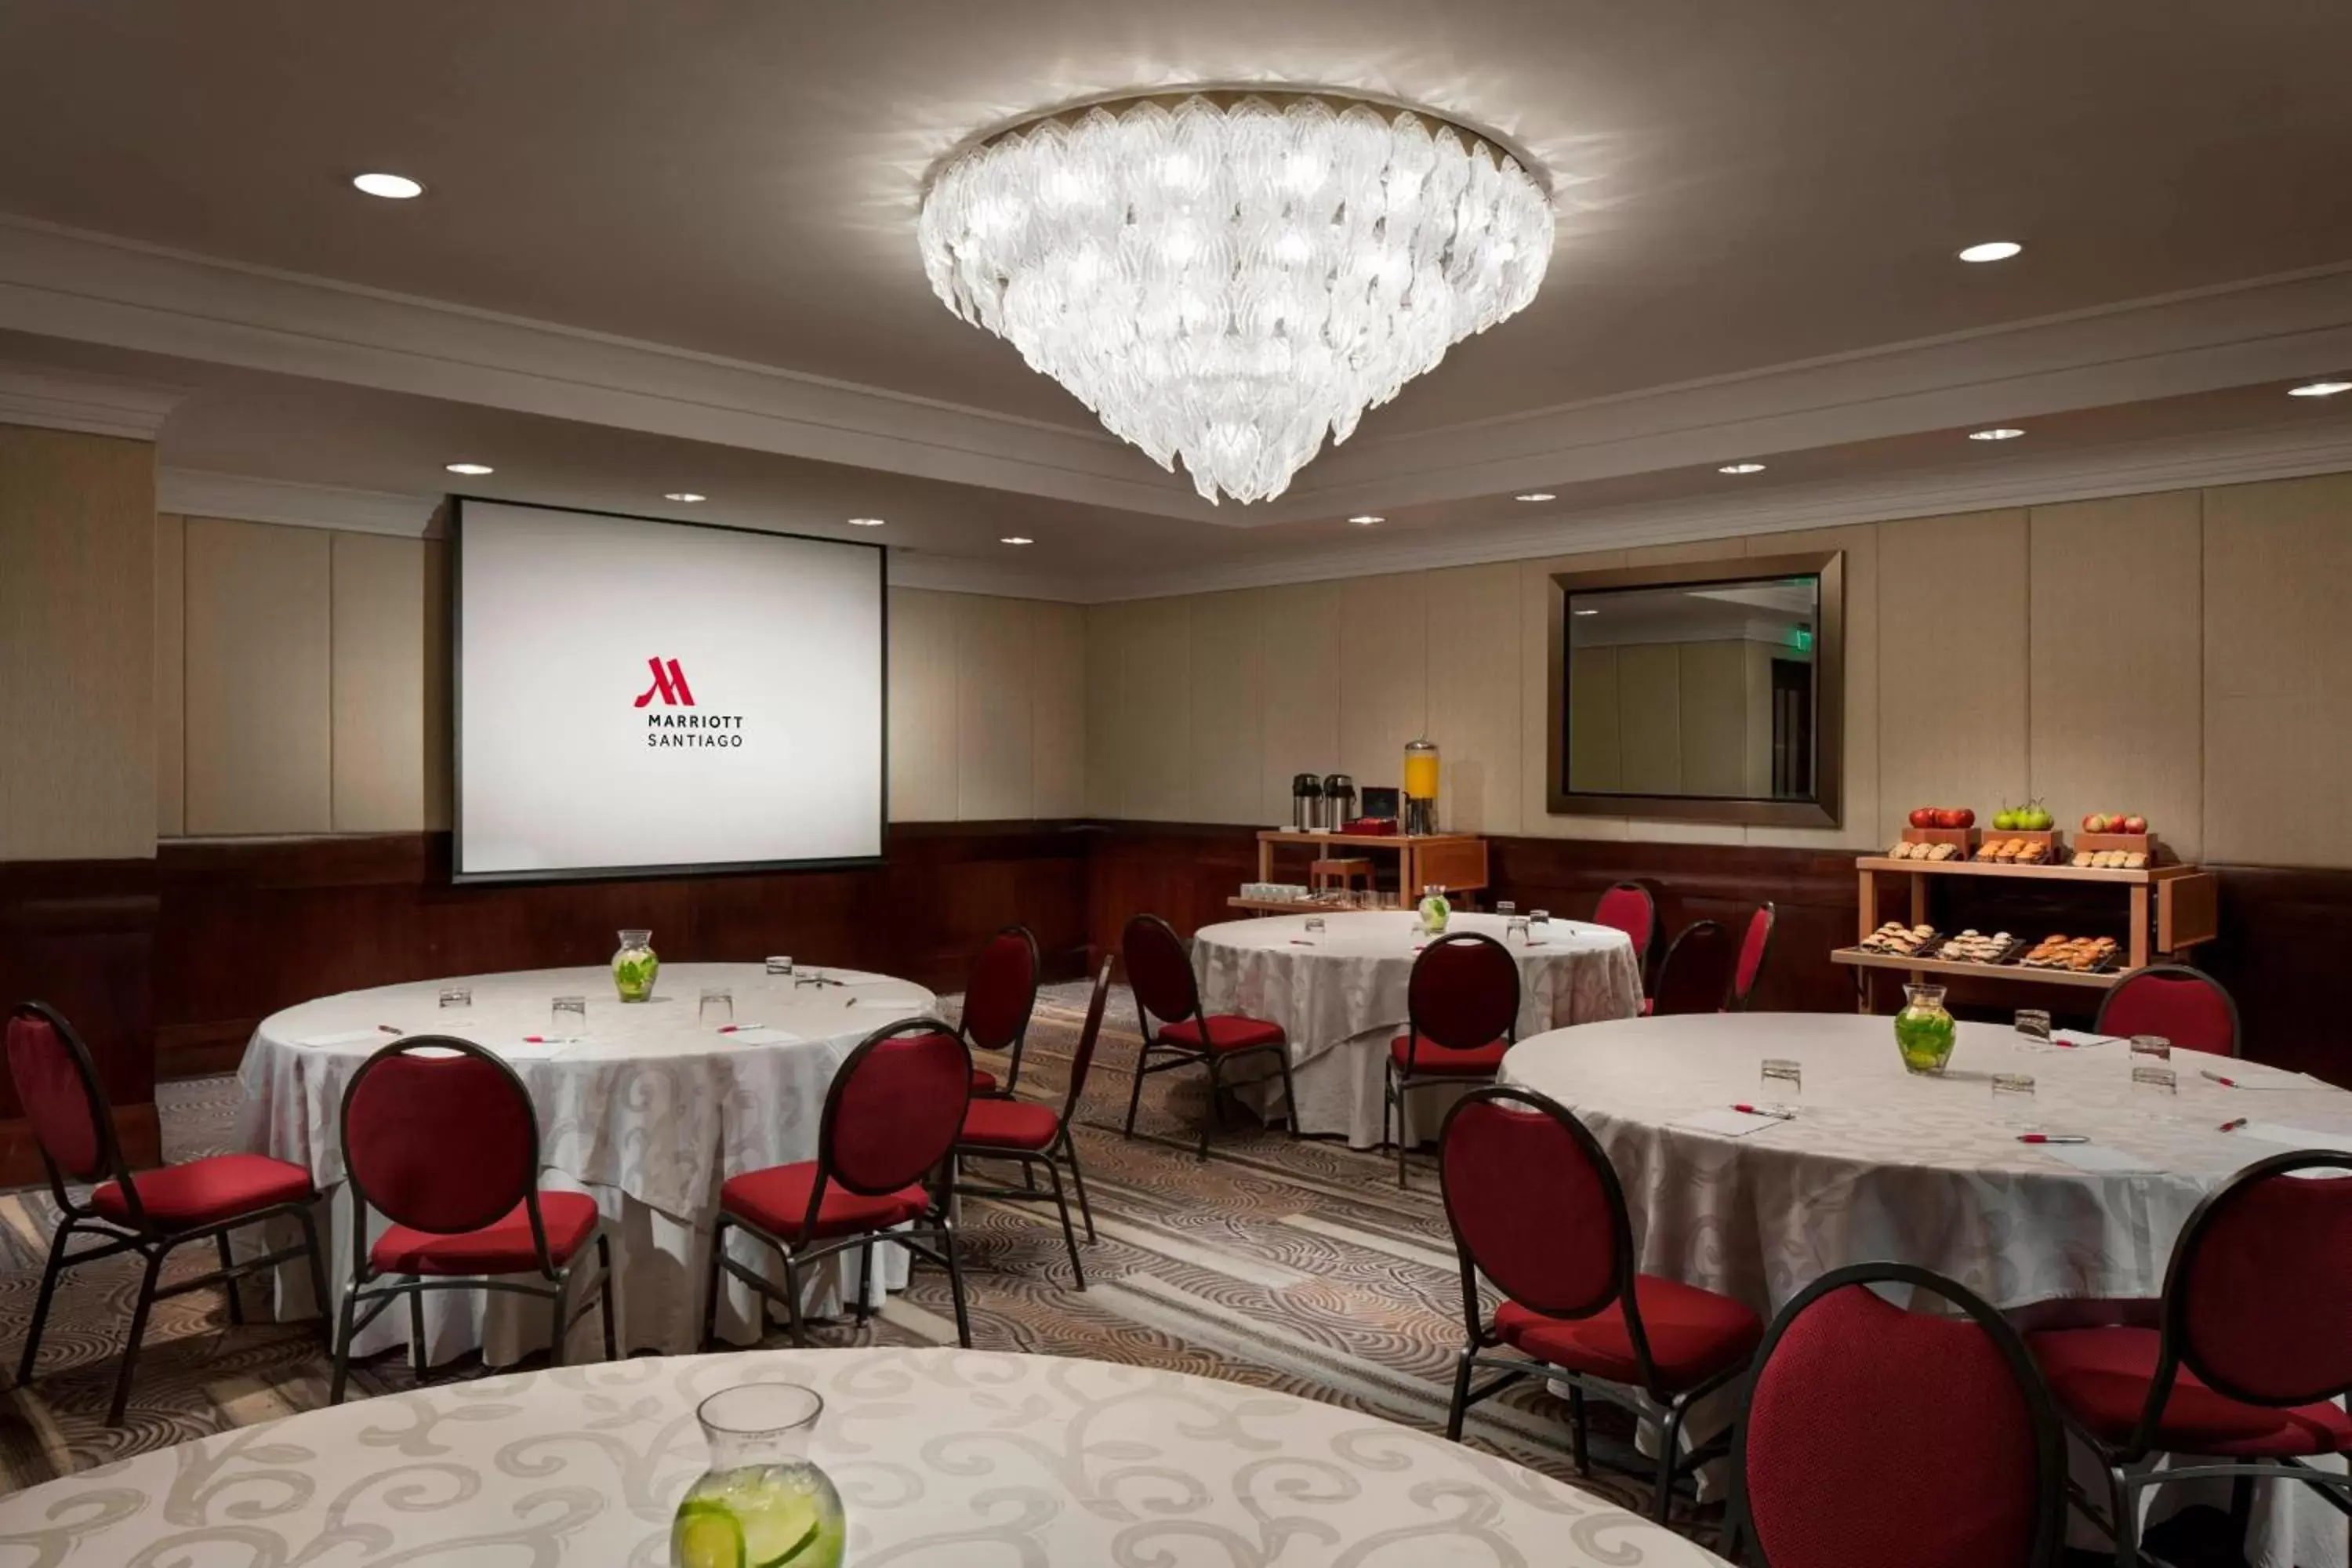 Meeting/conference room in Santiago Marriott Hotel